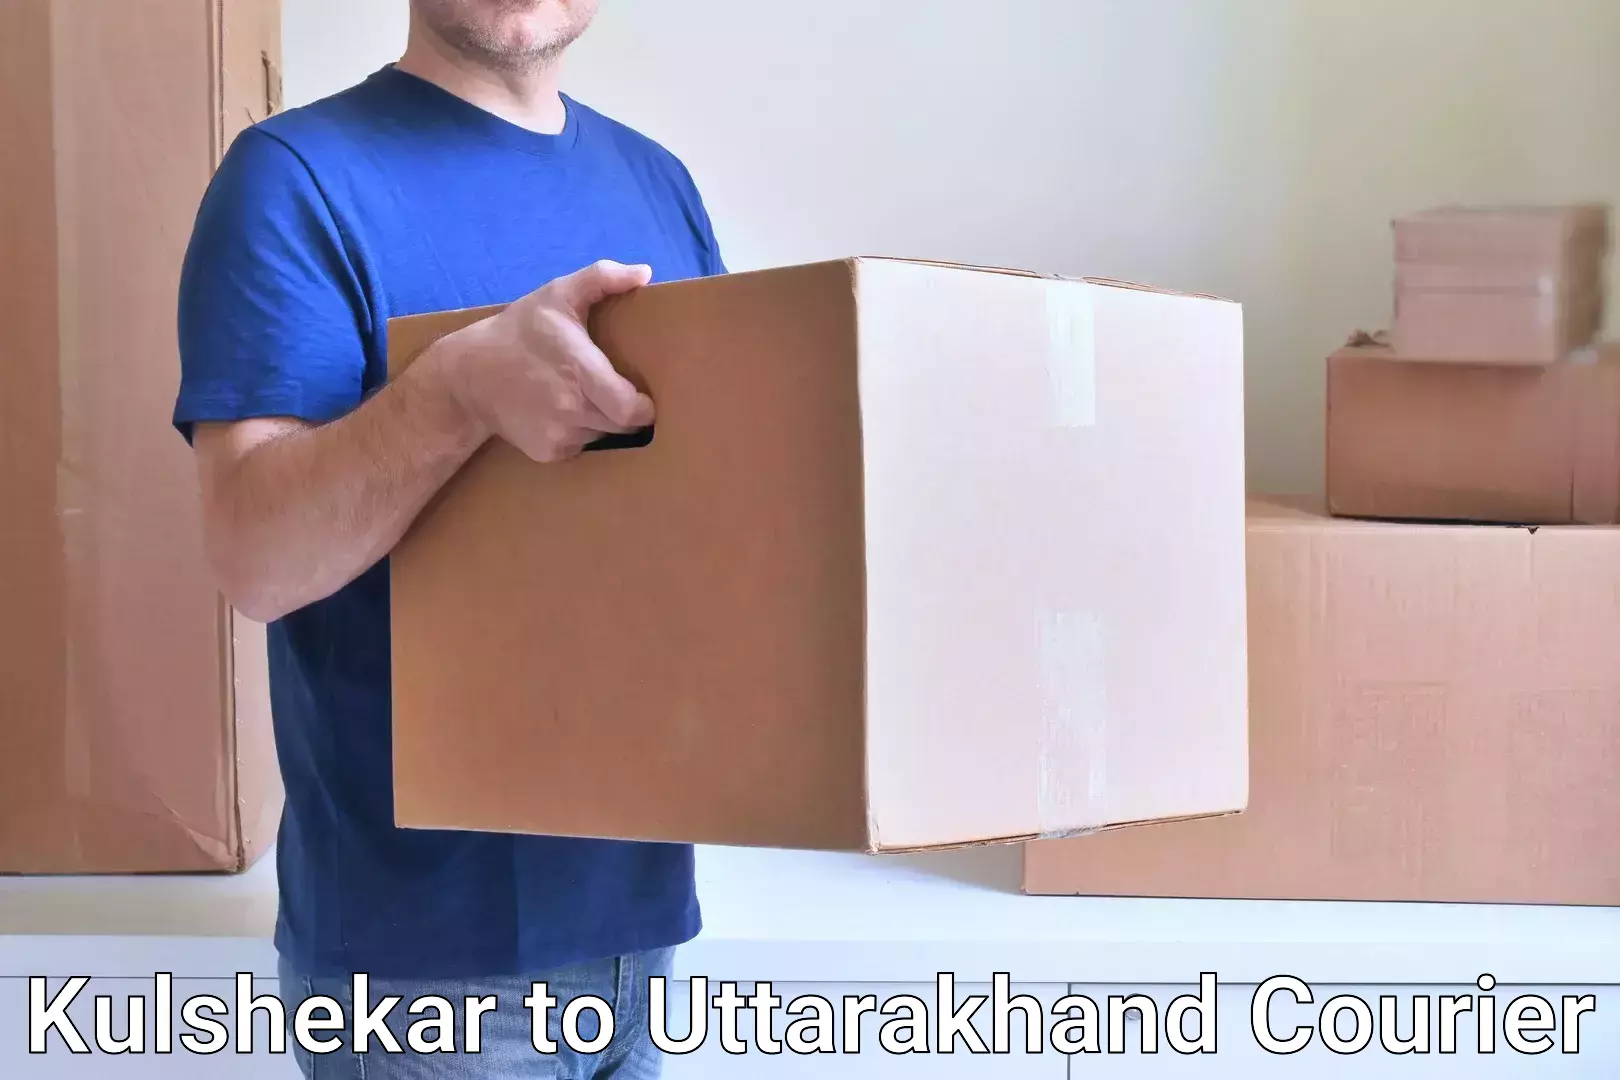 Nationwide parcel services Kulshekar to Uttarakhand